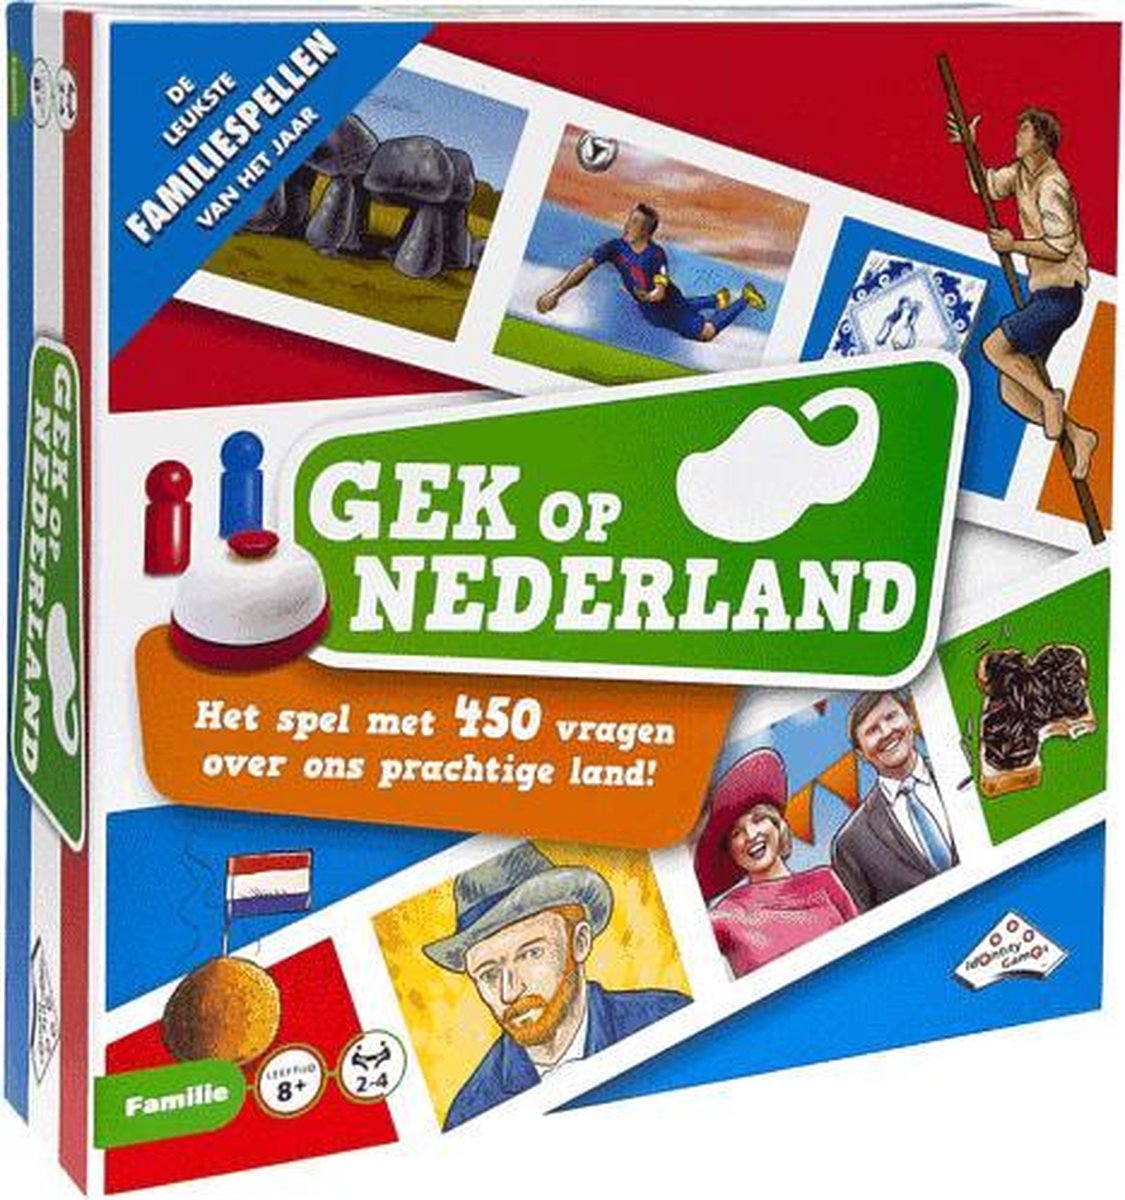 Gek op Nederland - Bordspel Familiespel | Games |